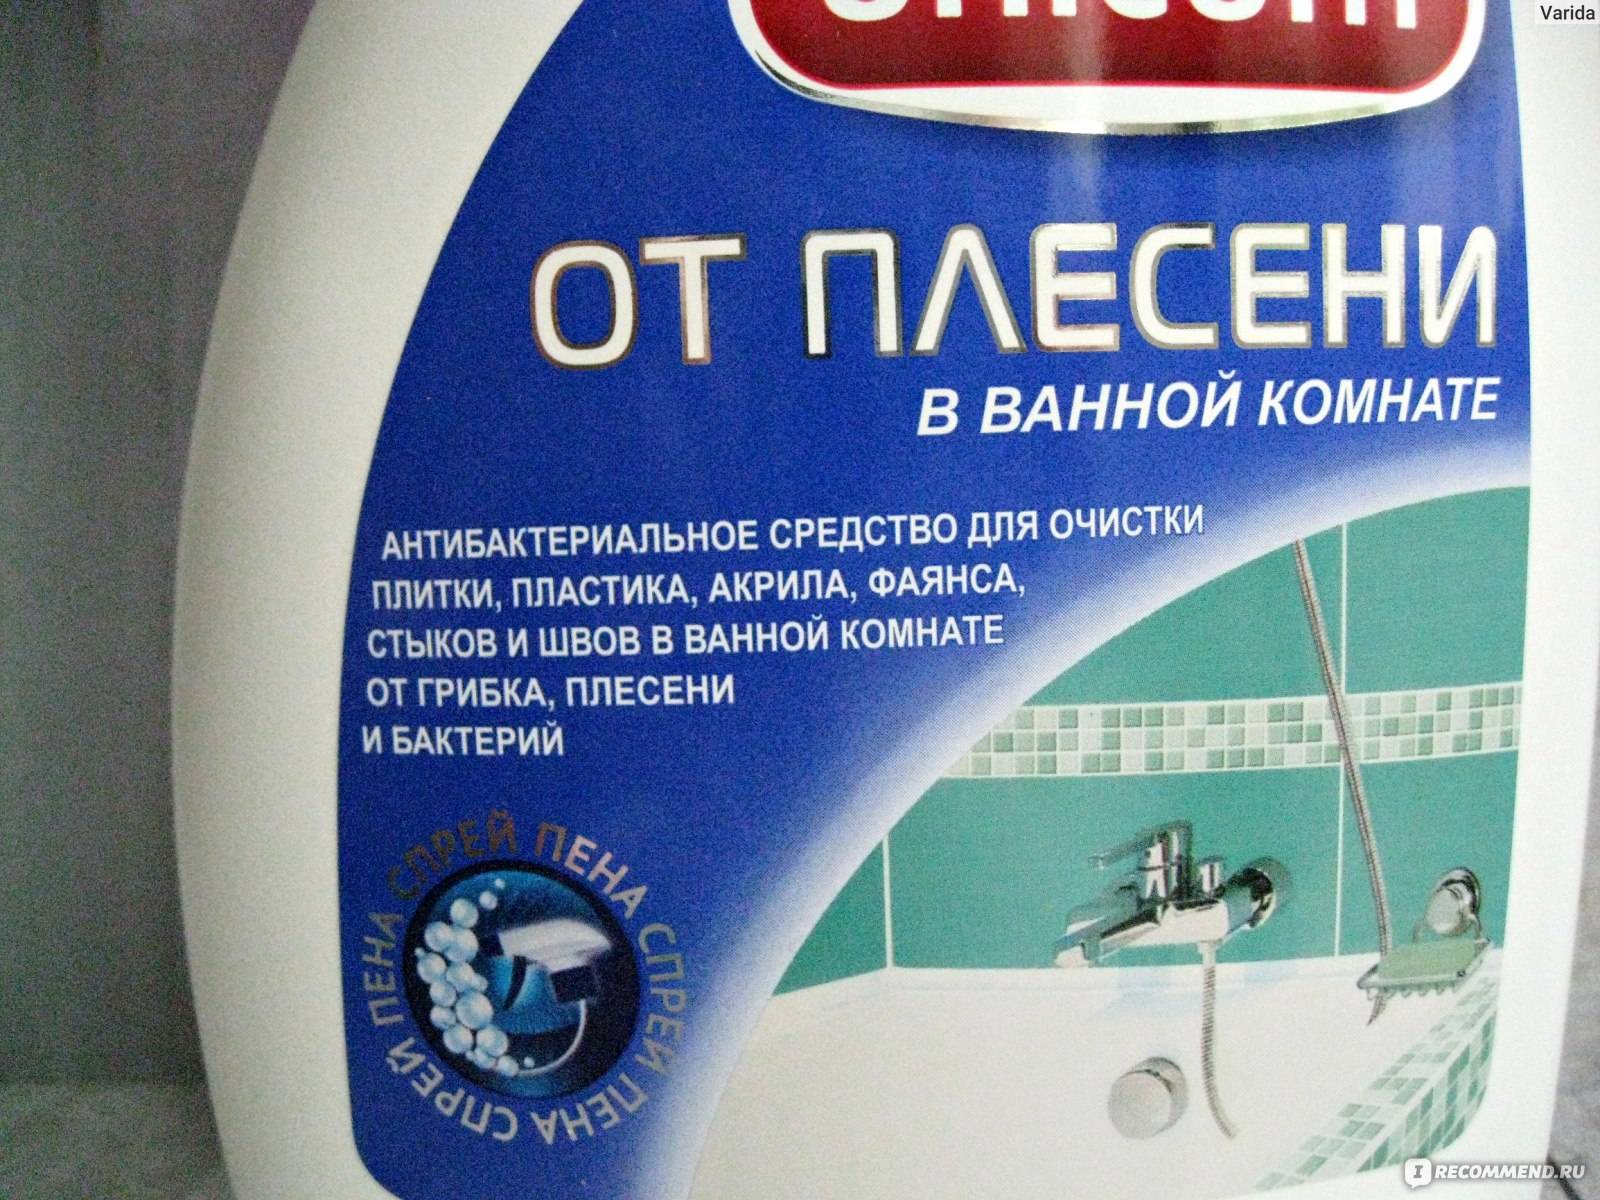 Как избавиться от плесени в ванной: 15 рабочих способов удаления черной плесени в домашних условиях